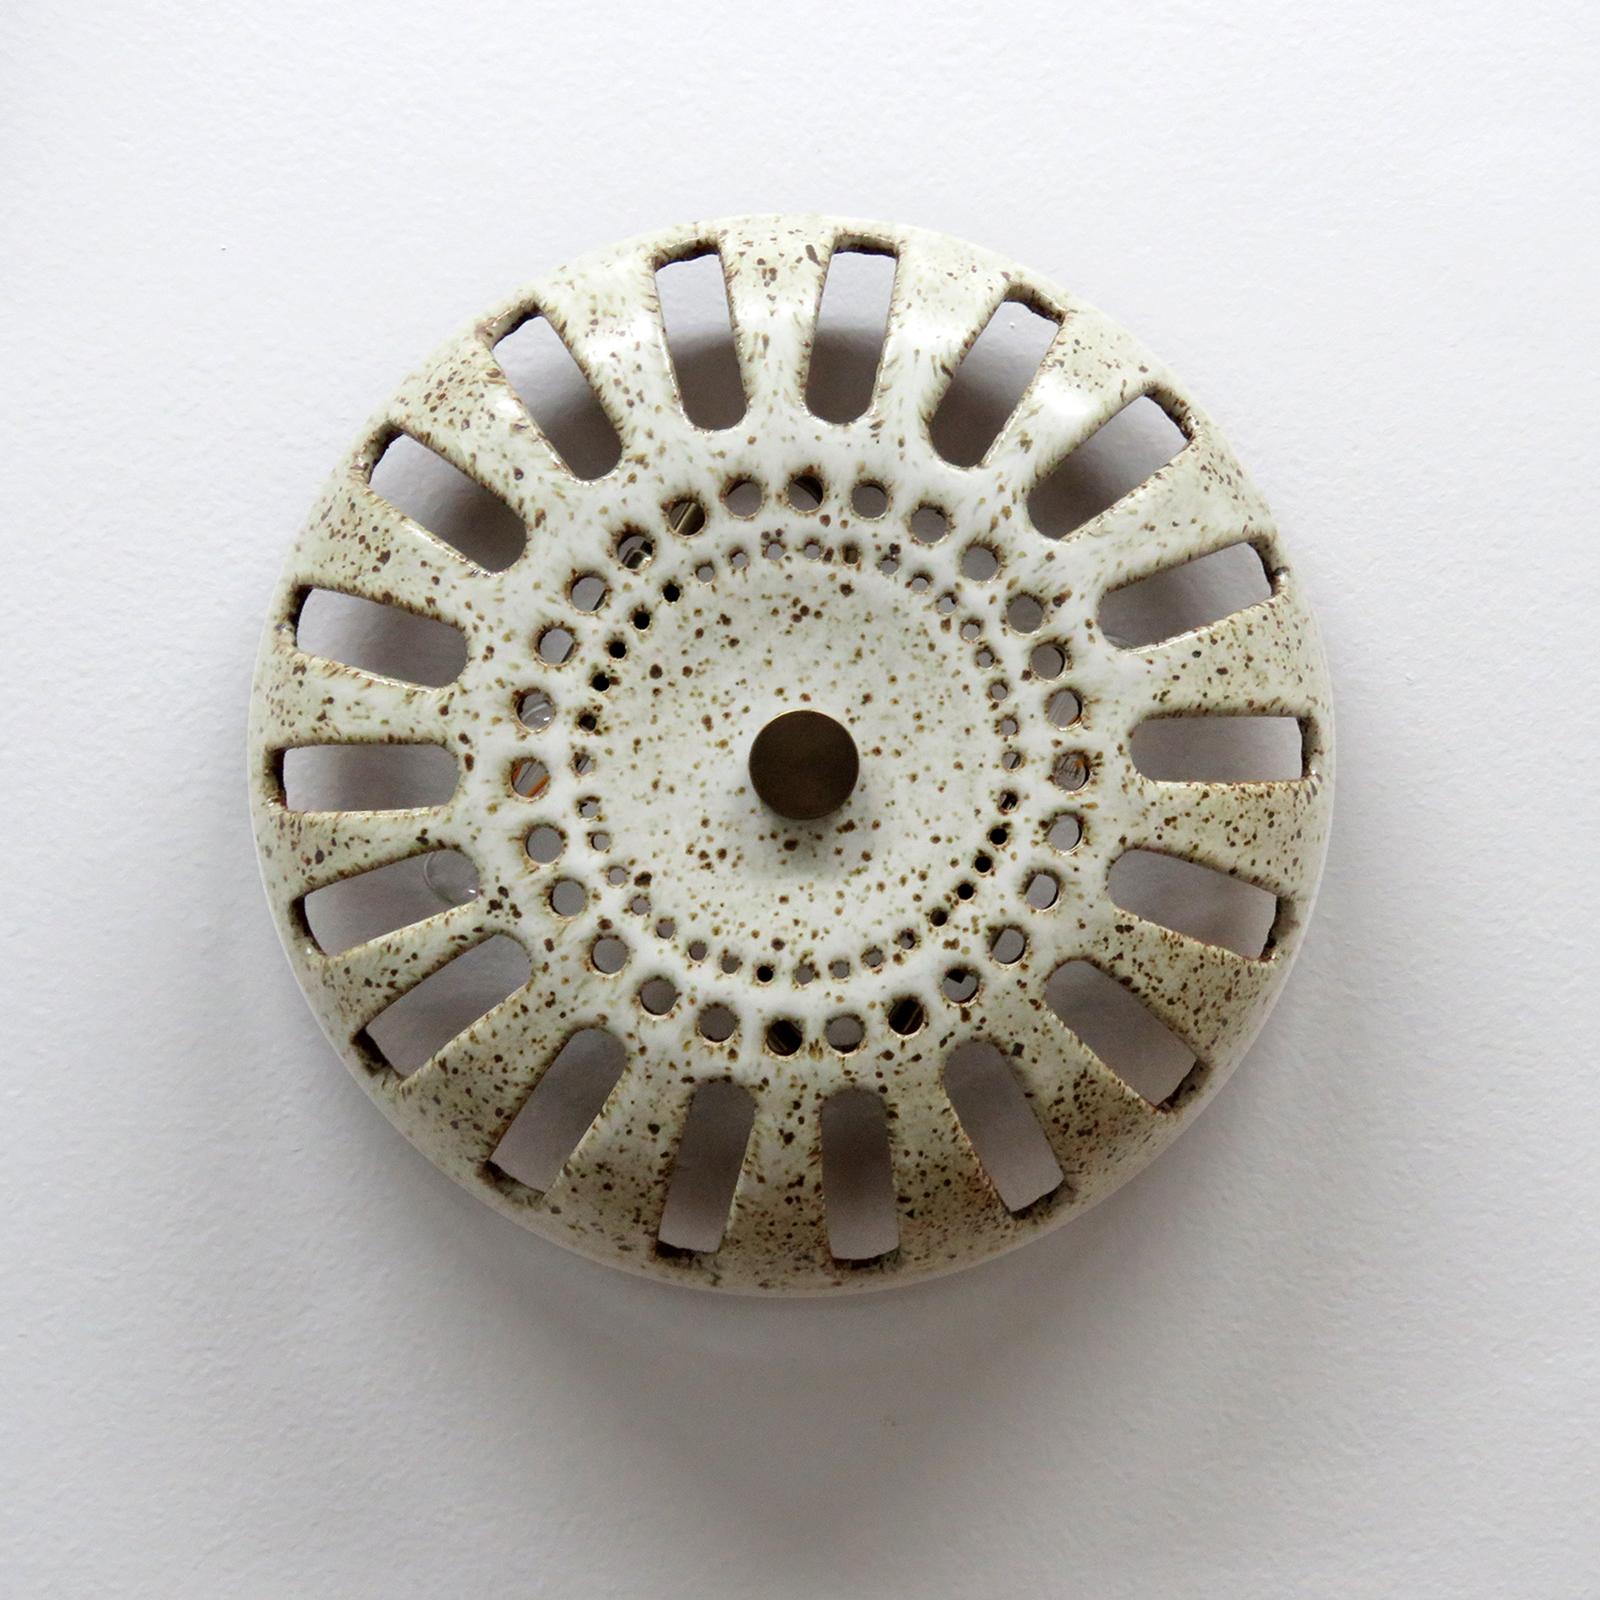 Die atemberaubende Keramikleuchte No.48b wurde von der in Los Angeles lebenden Keramikerin Heather Levine entworfen und handgefertigt. Hochgebranntes Steinzeug mit mattweißer Glasur auf einem korkfarbenen Tonkörper mit dekorativen Perforationen, die